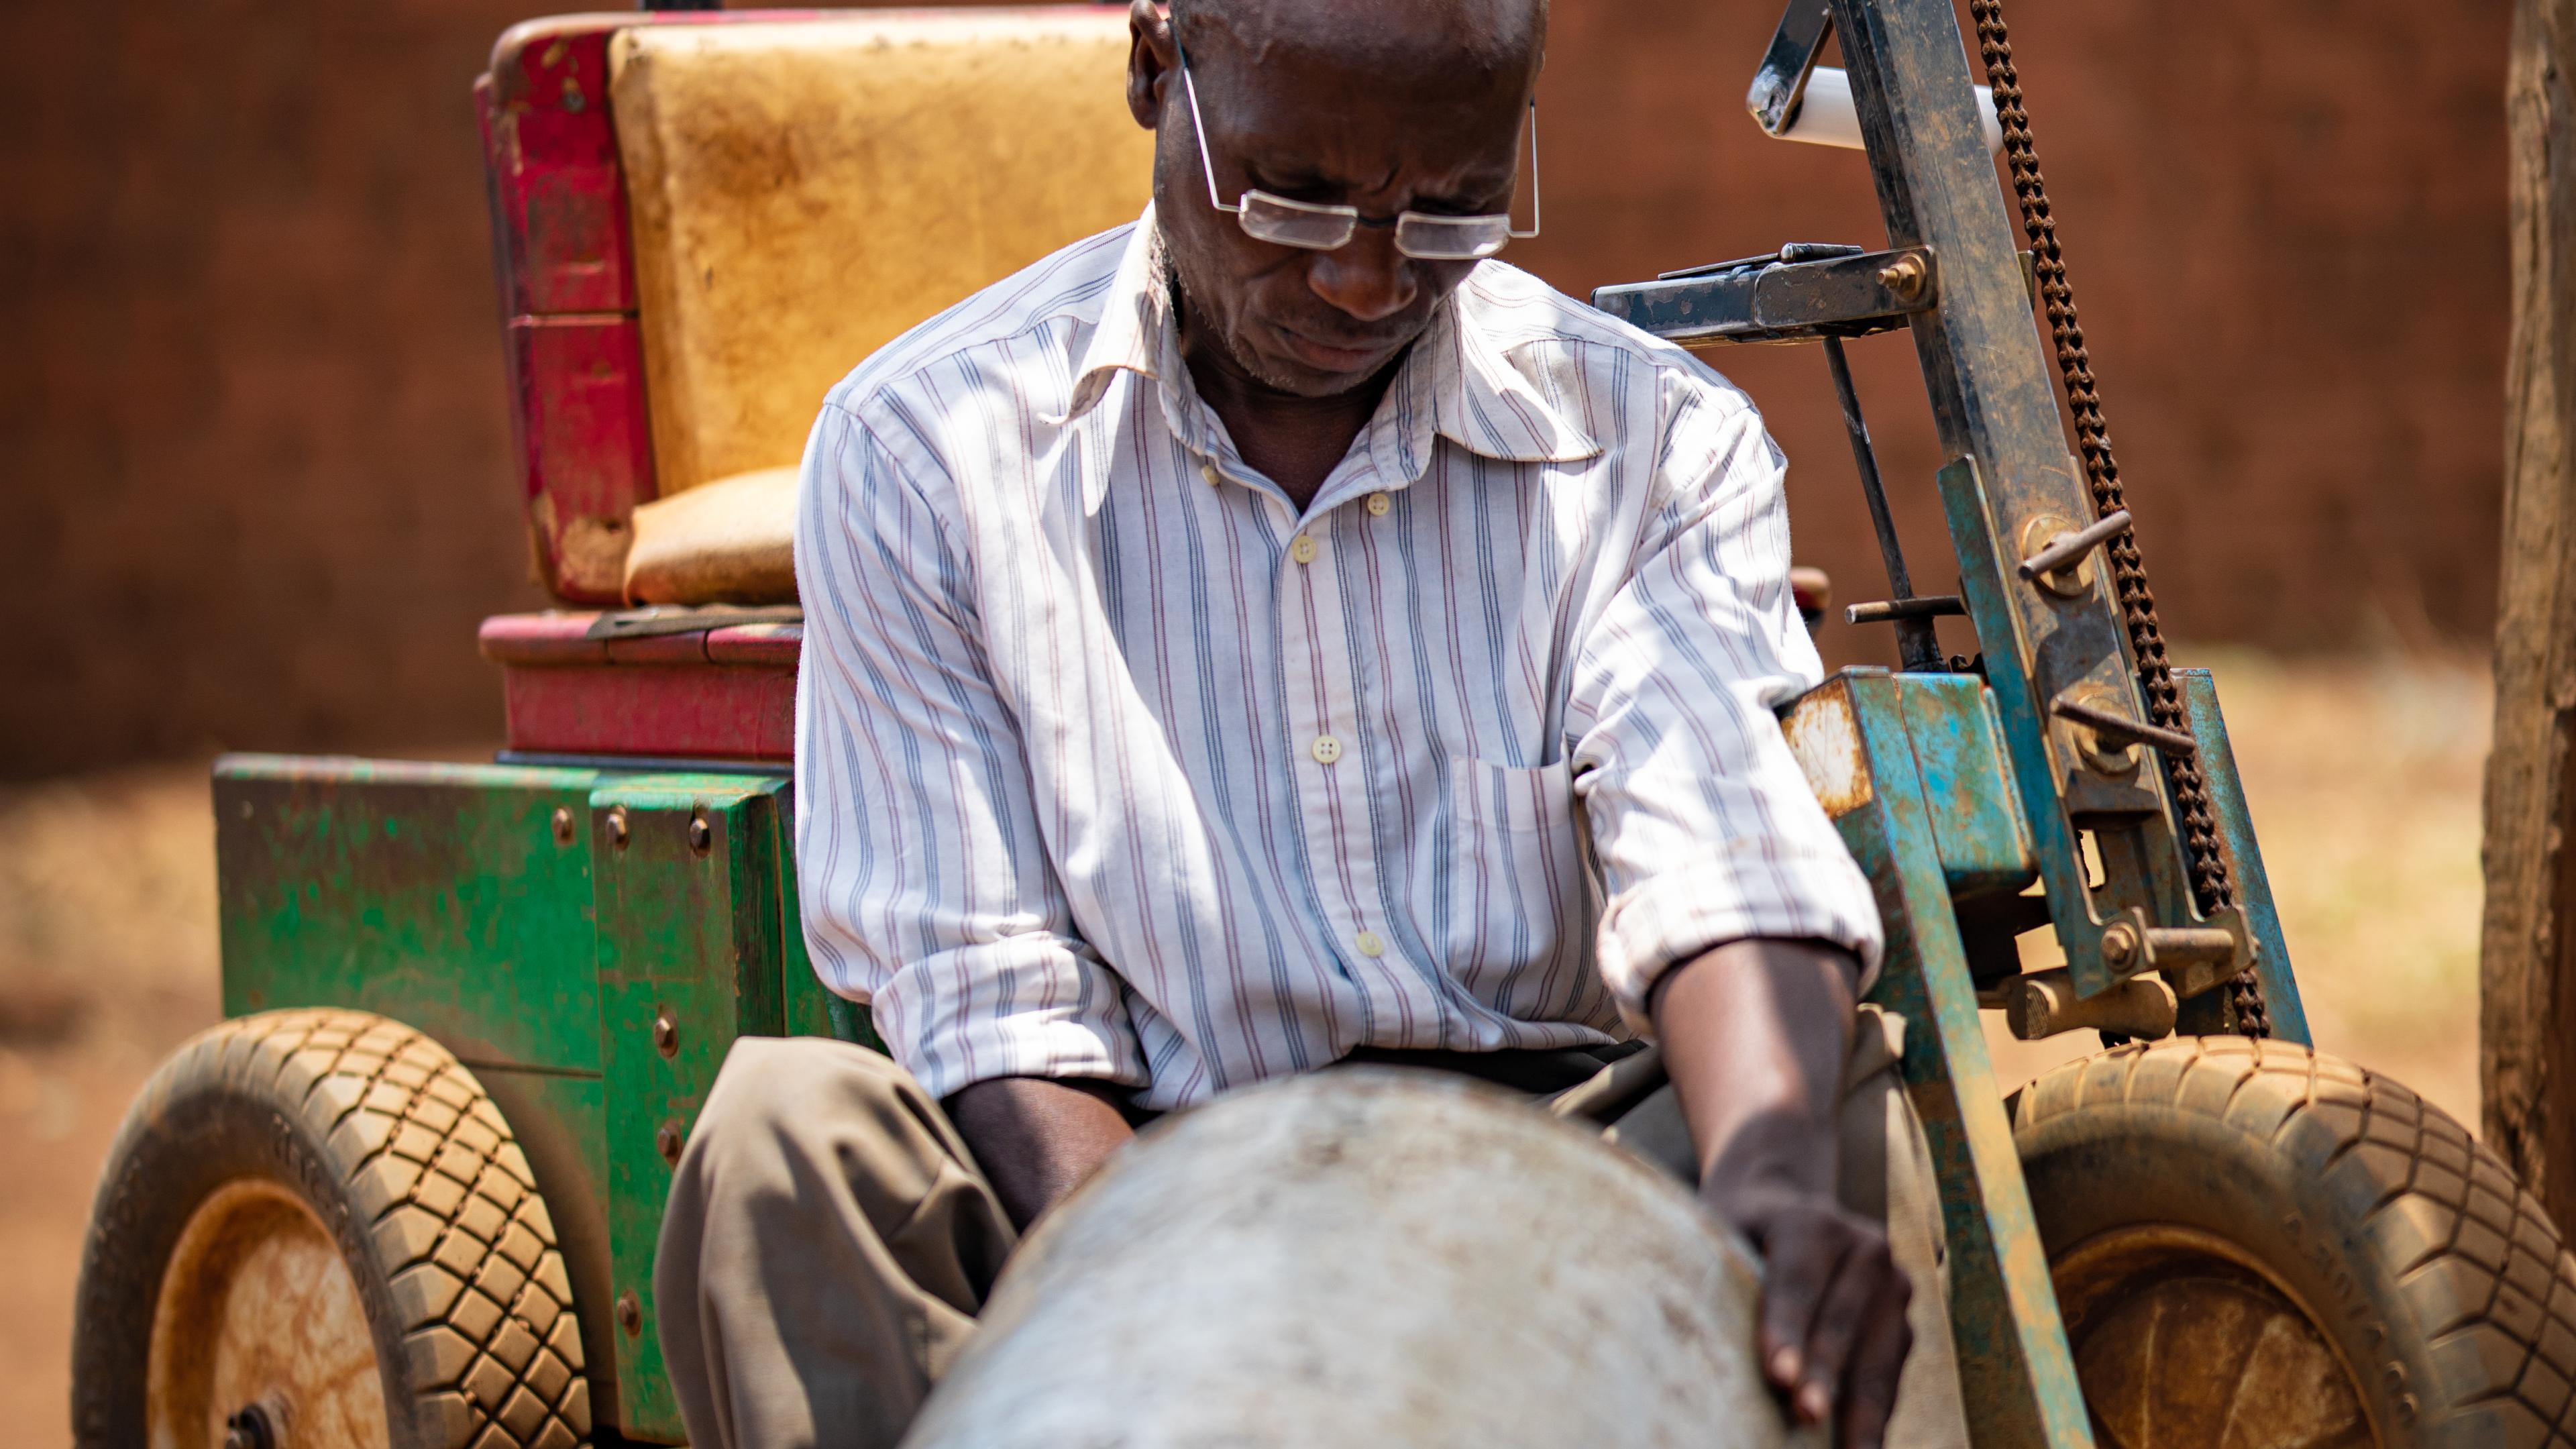 Malawischer Mann mit Brille bearbeitet Blech mit dem Hammer